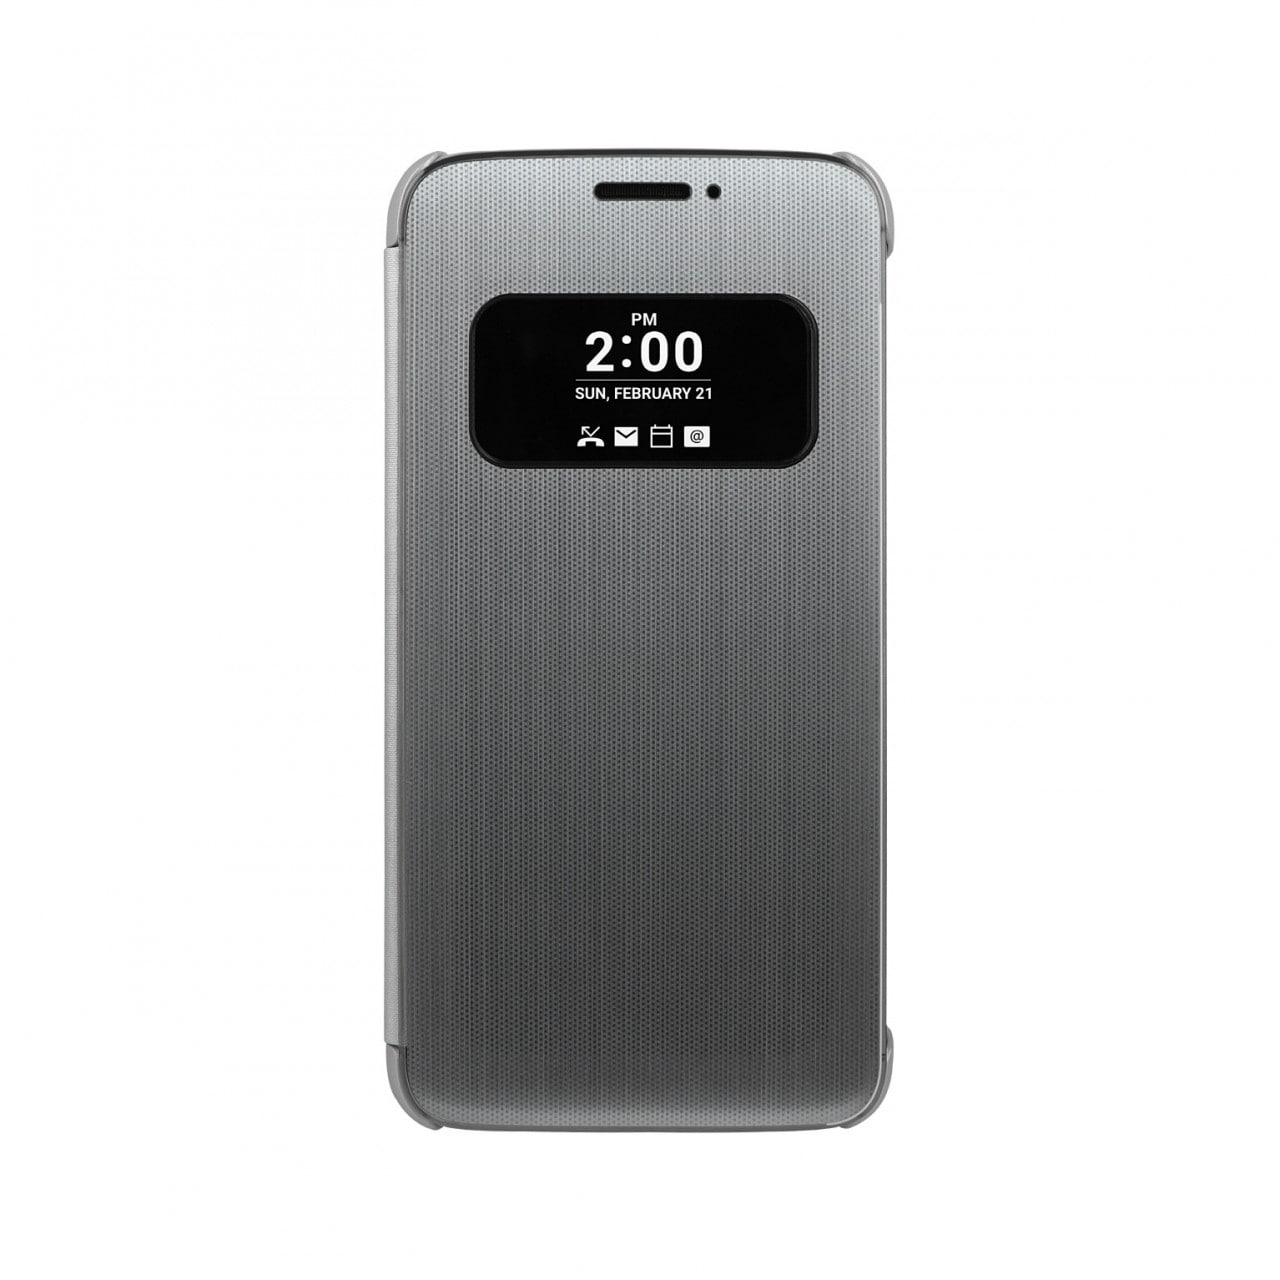 LG presenta una bella quick cover touch, per uno smartphone che ancora non esiste (foto)